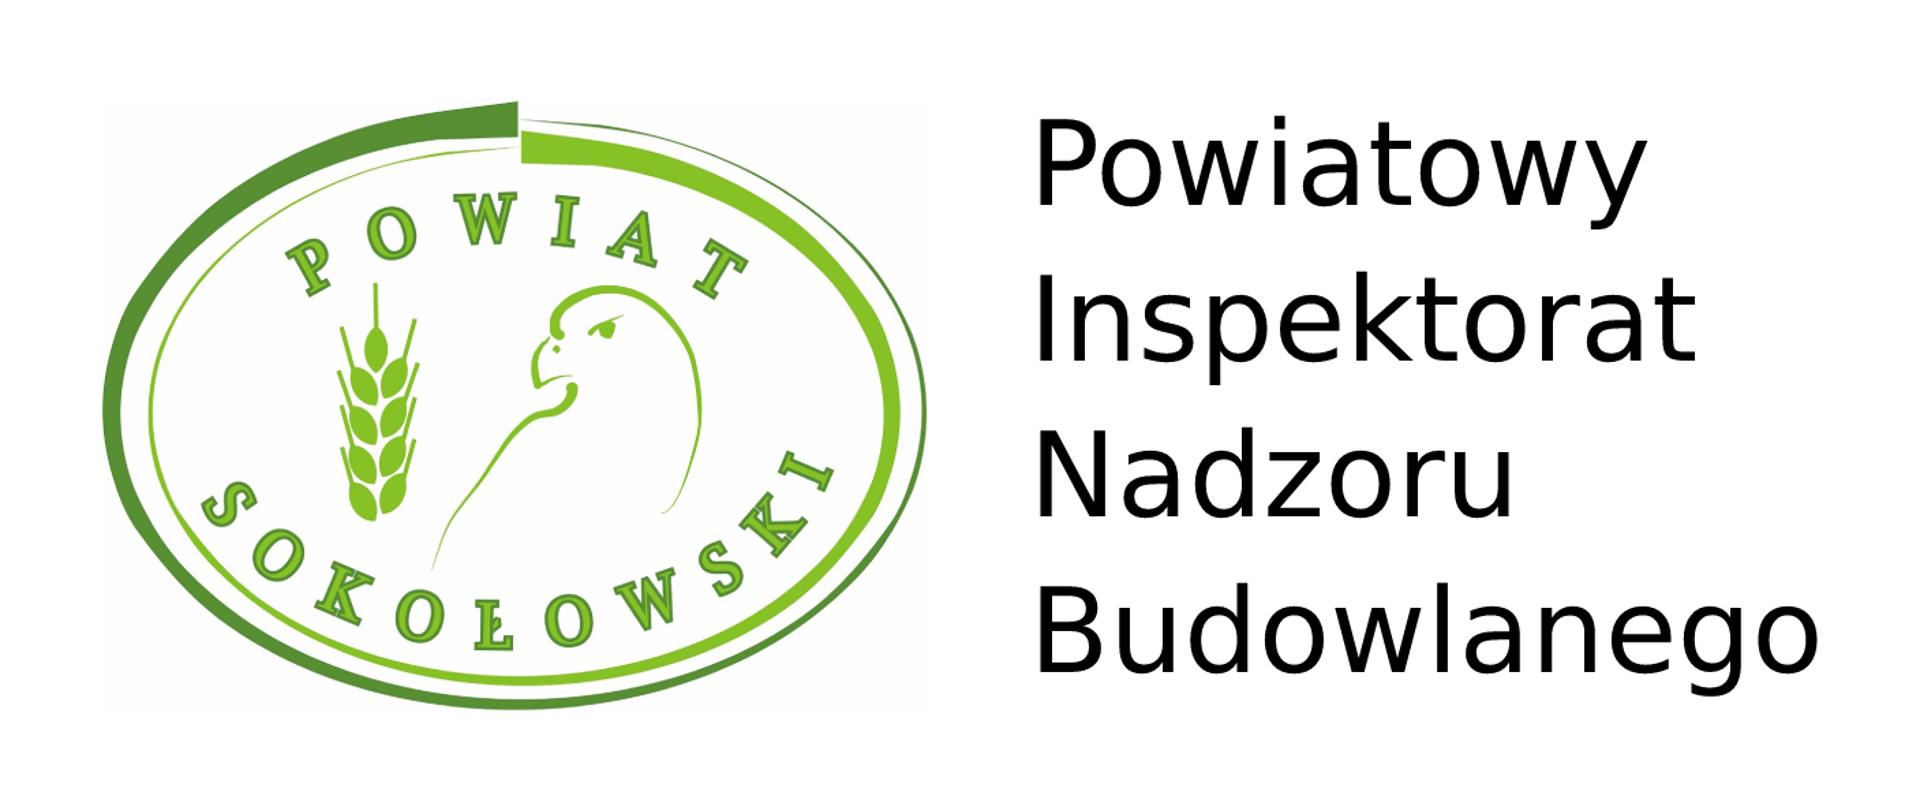 Powiatowy Inspektorat Nadzoru Budowlanego w Sokołowie Podlaskim